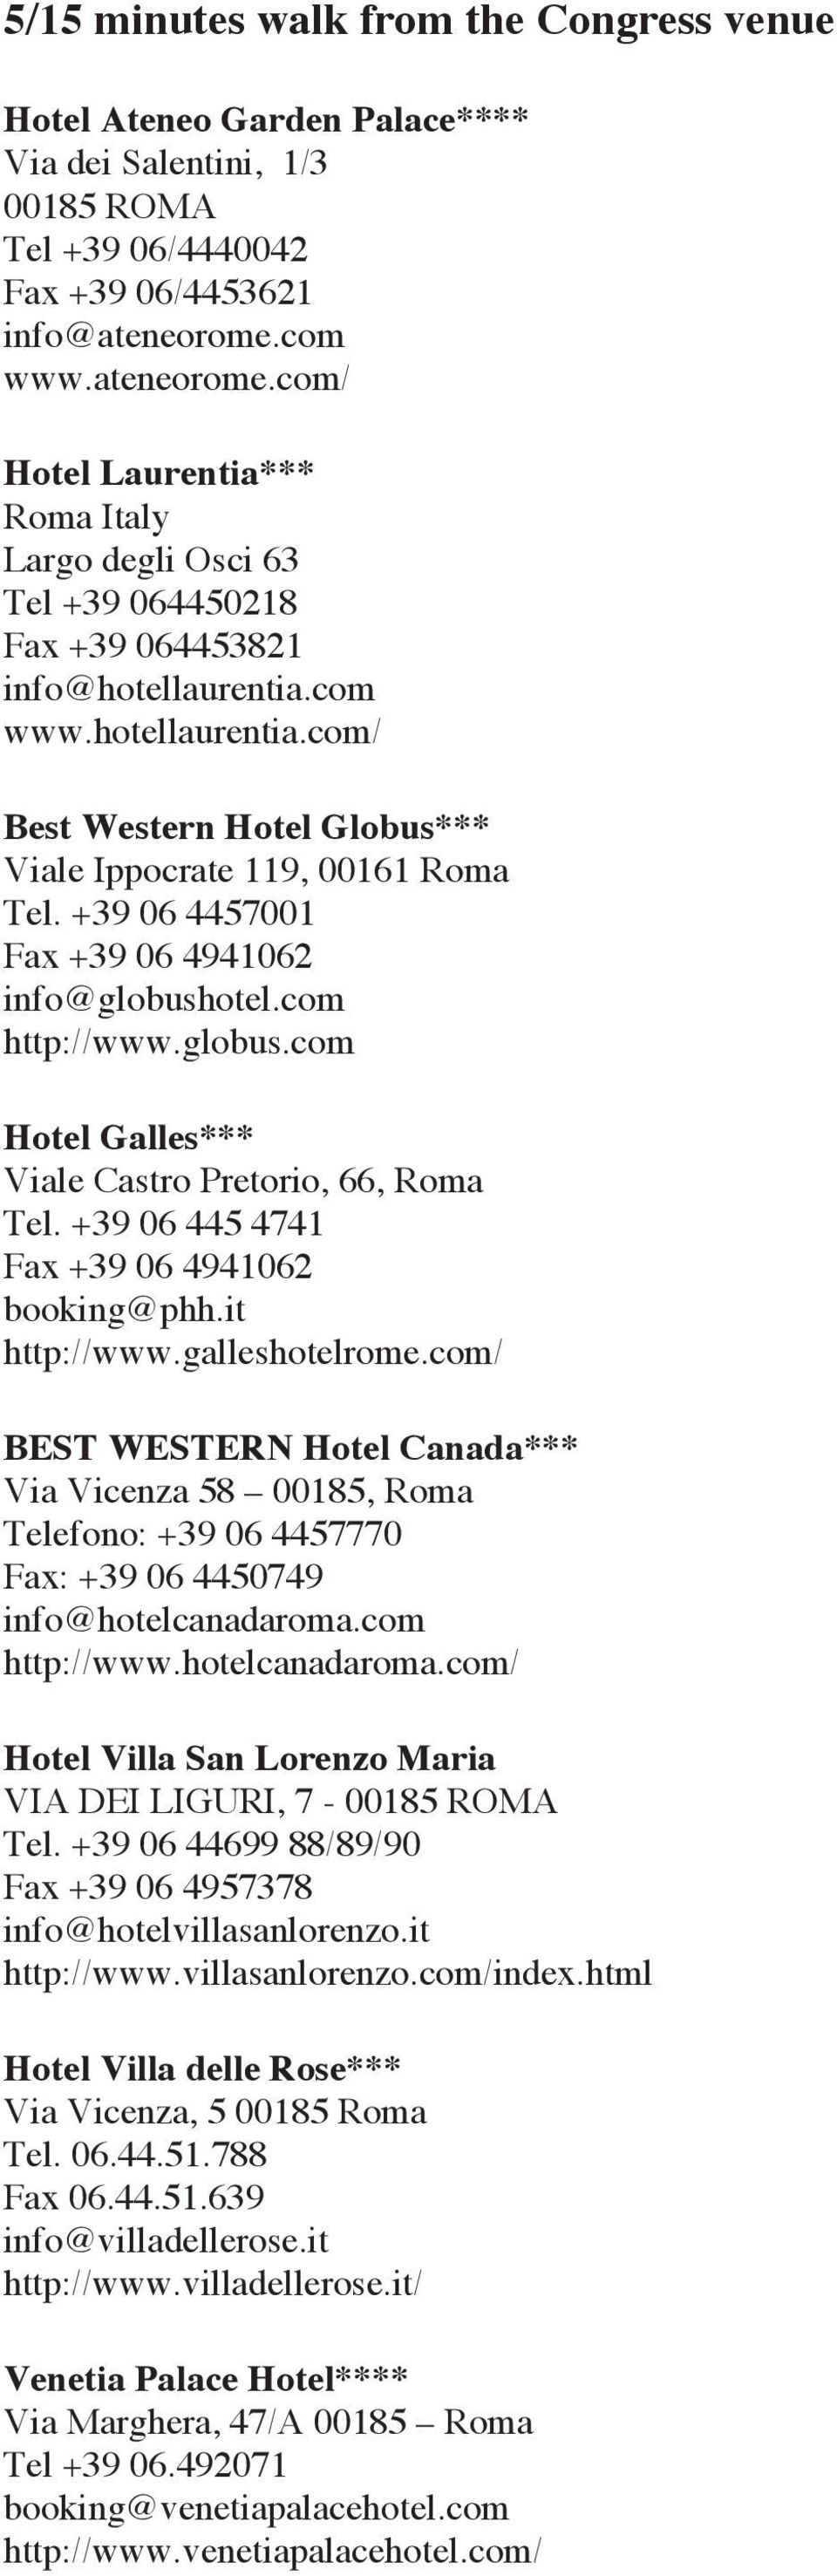 +39 06 4457001 Fax +39 06 4941062 info@globushotel.com http://www.globus.com Hotel Galles*** Viale Castro Pretorio, 66, Roma Tel. +39 06 445 4741 Fax +39 06 4941062 booking@phh.it http://www.